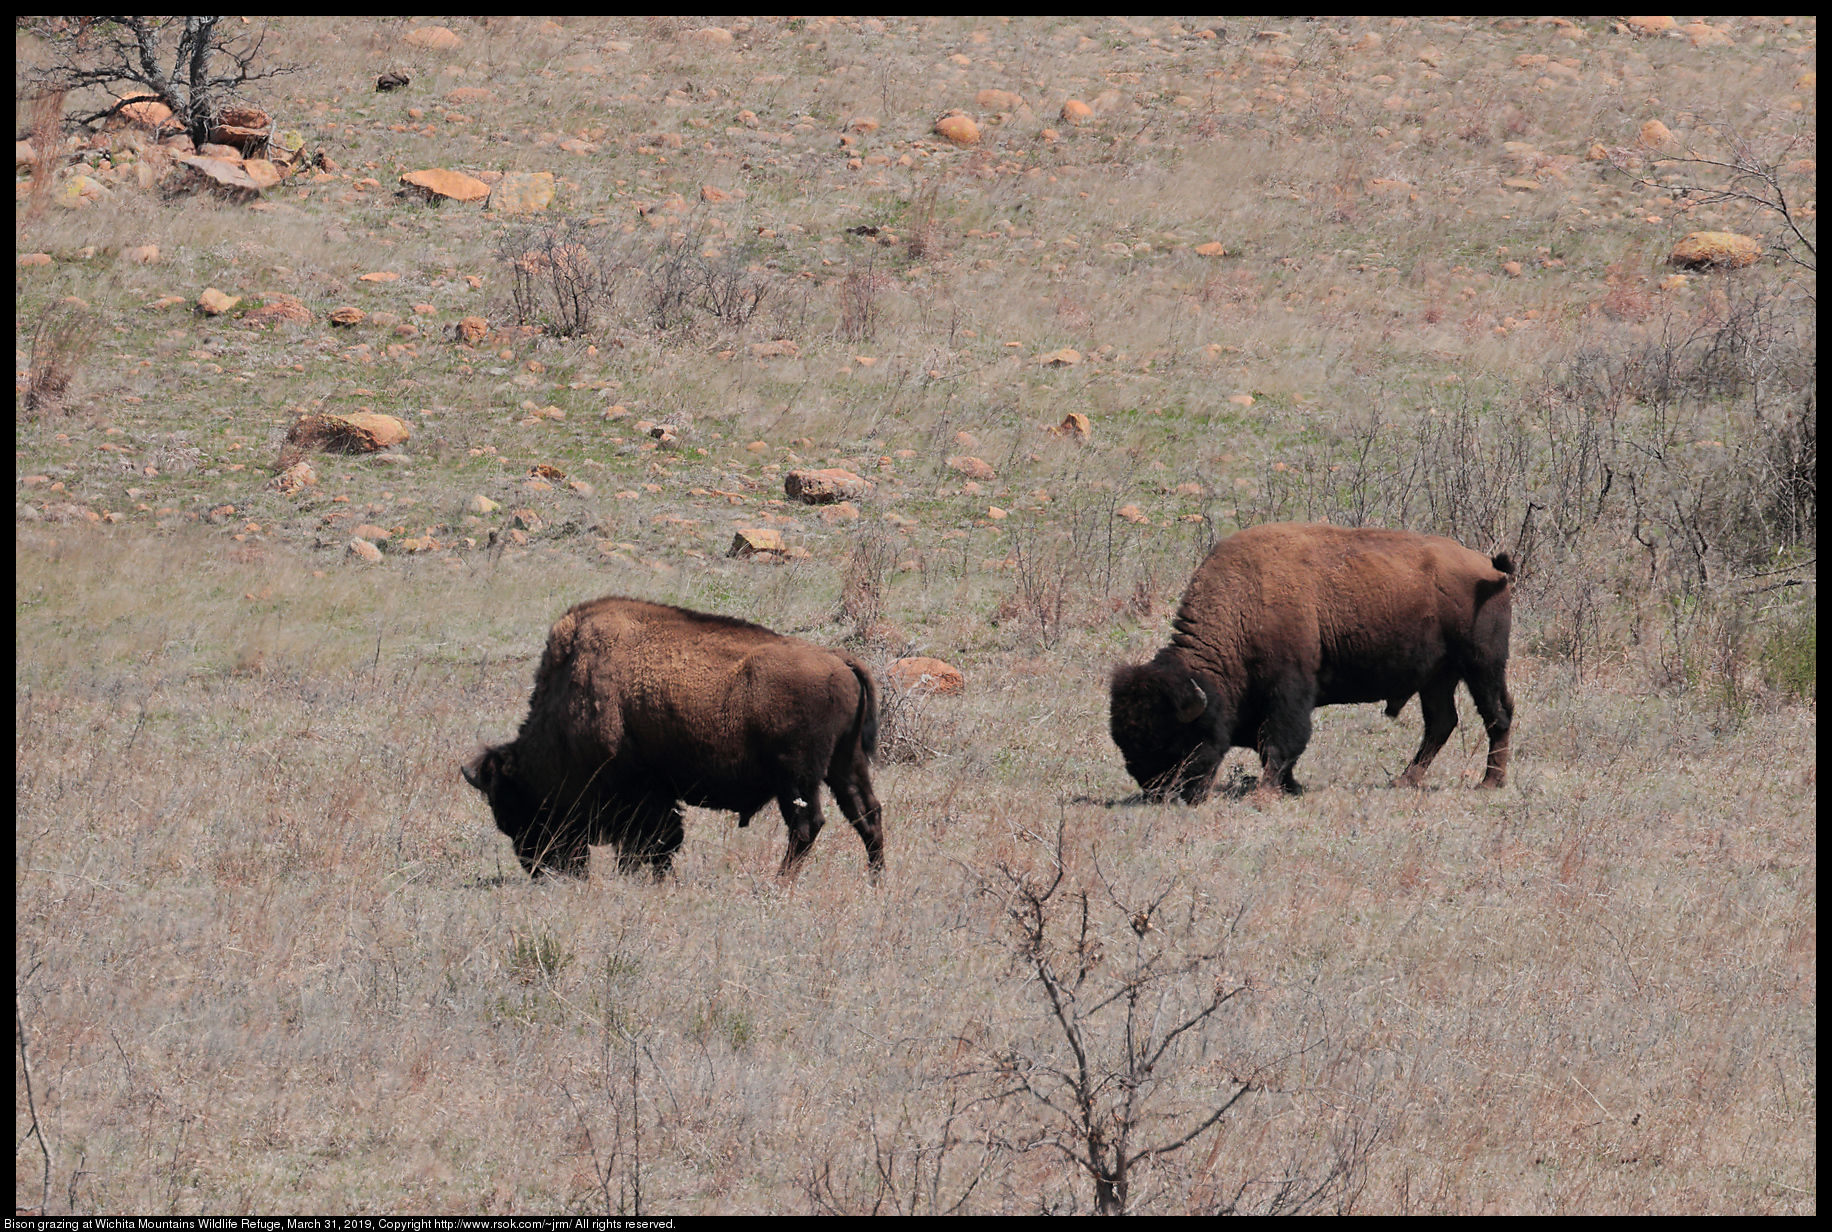 Bison grazing at Wichita Mountains Wildlife Refuge, March 31, 2019